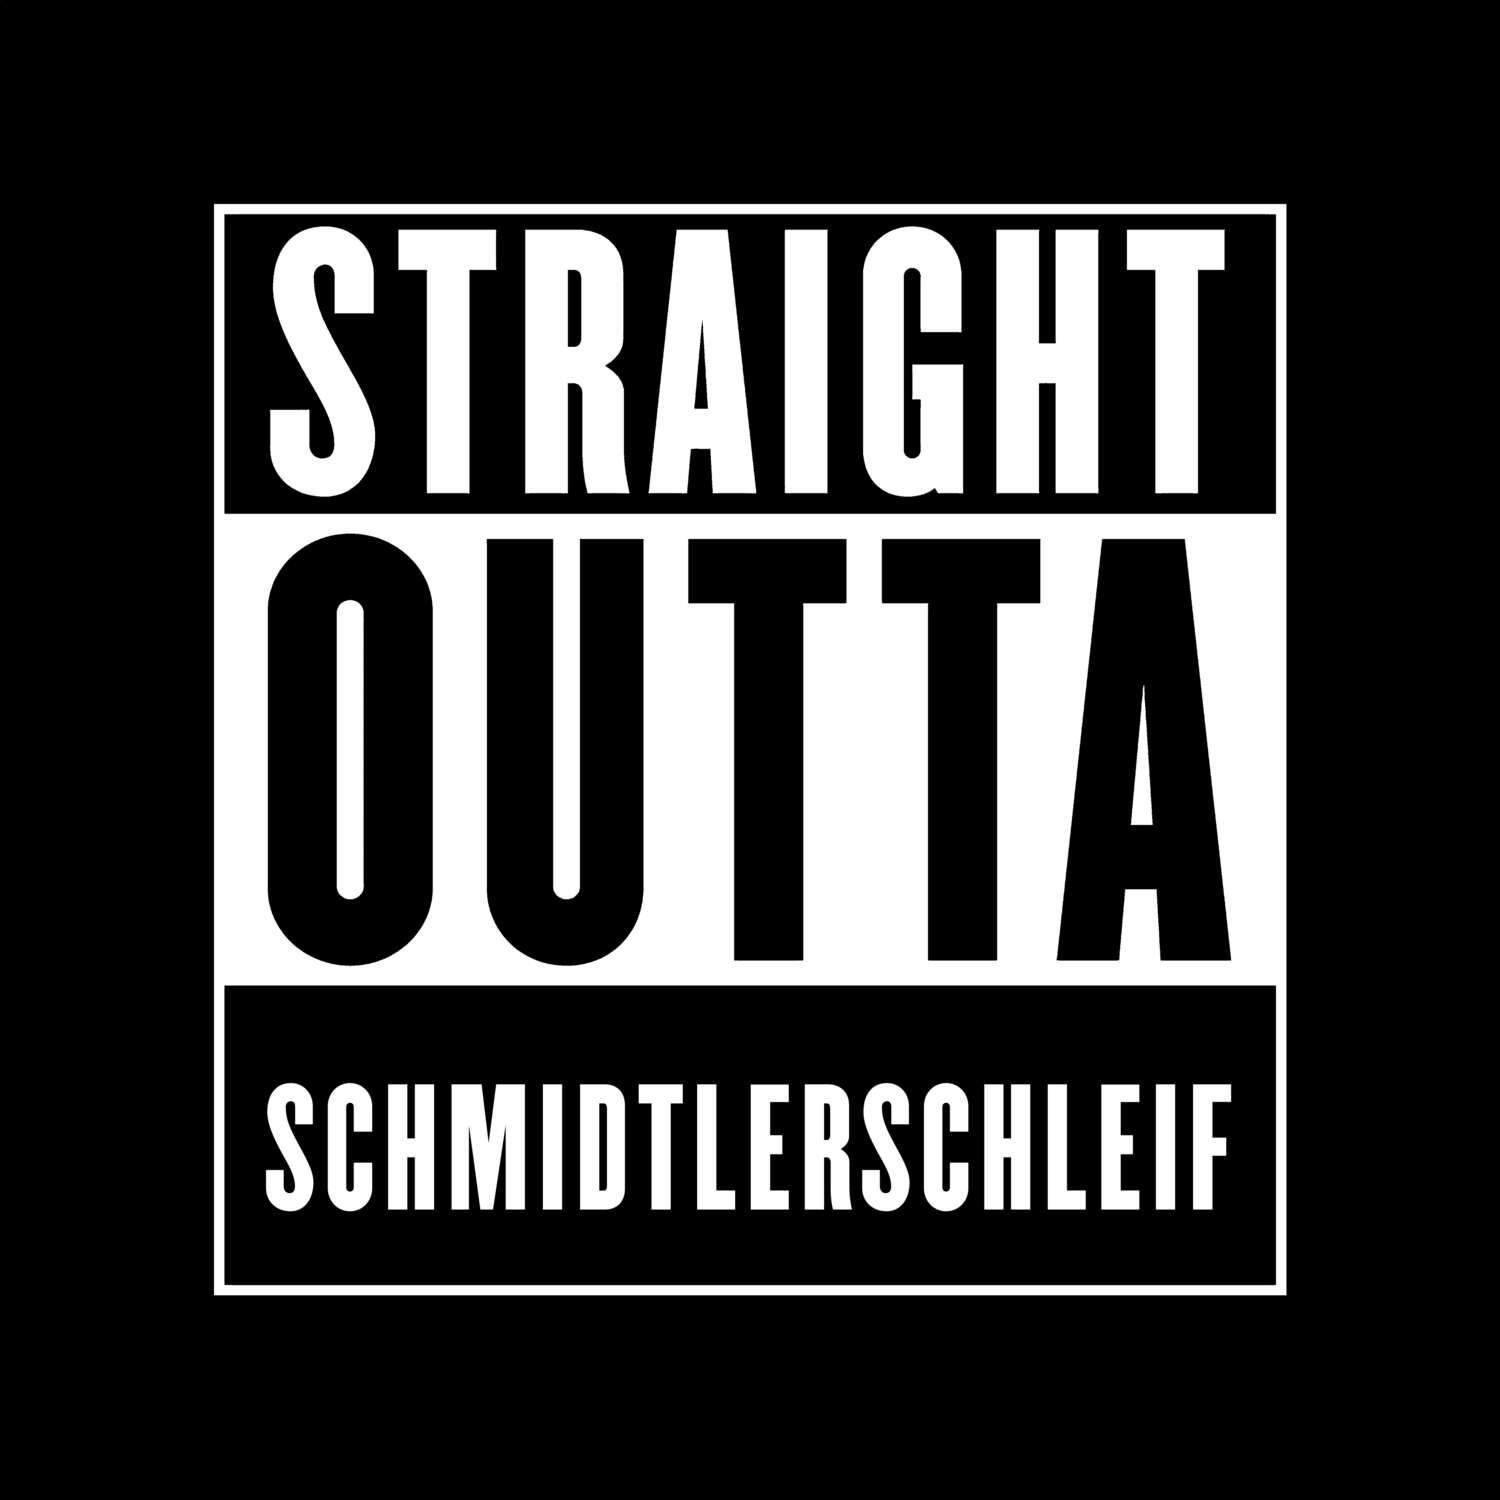 Schmidtlerschleif T-Shirt »Straight Outta«